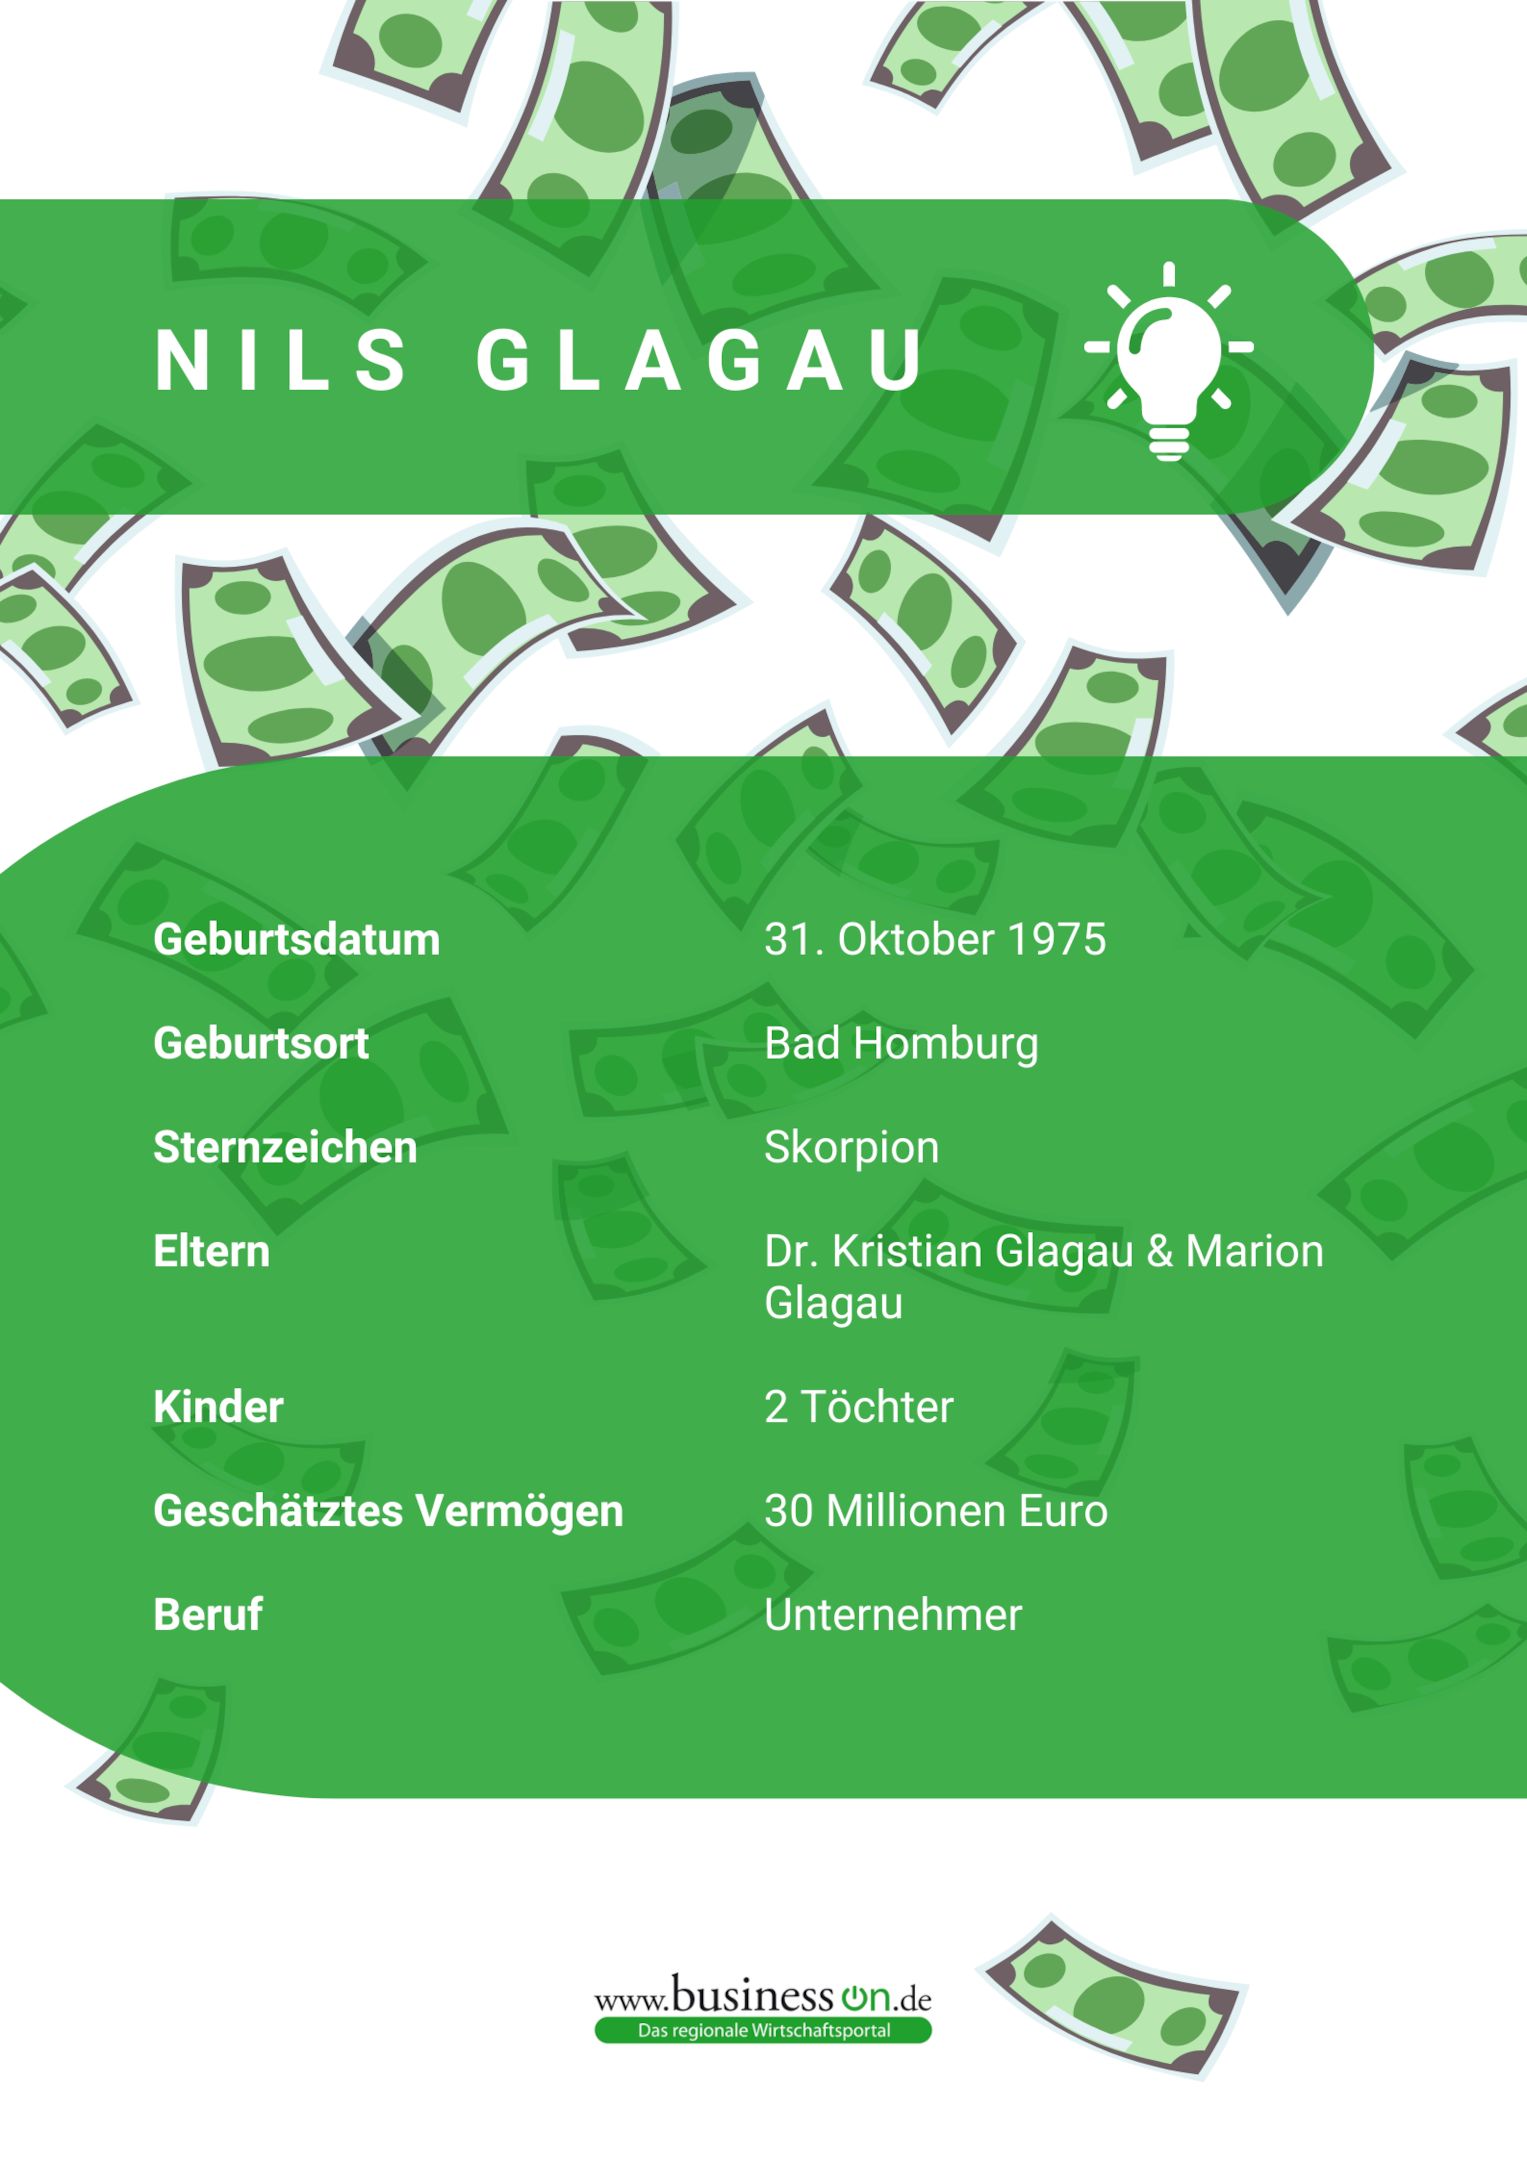 Nils Glagau